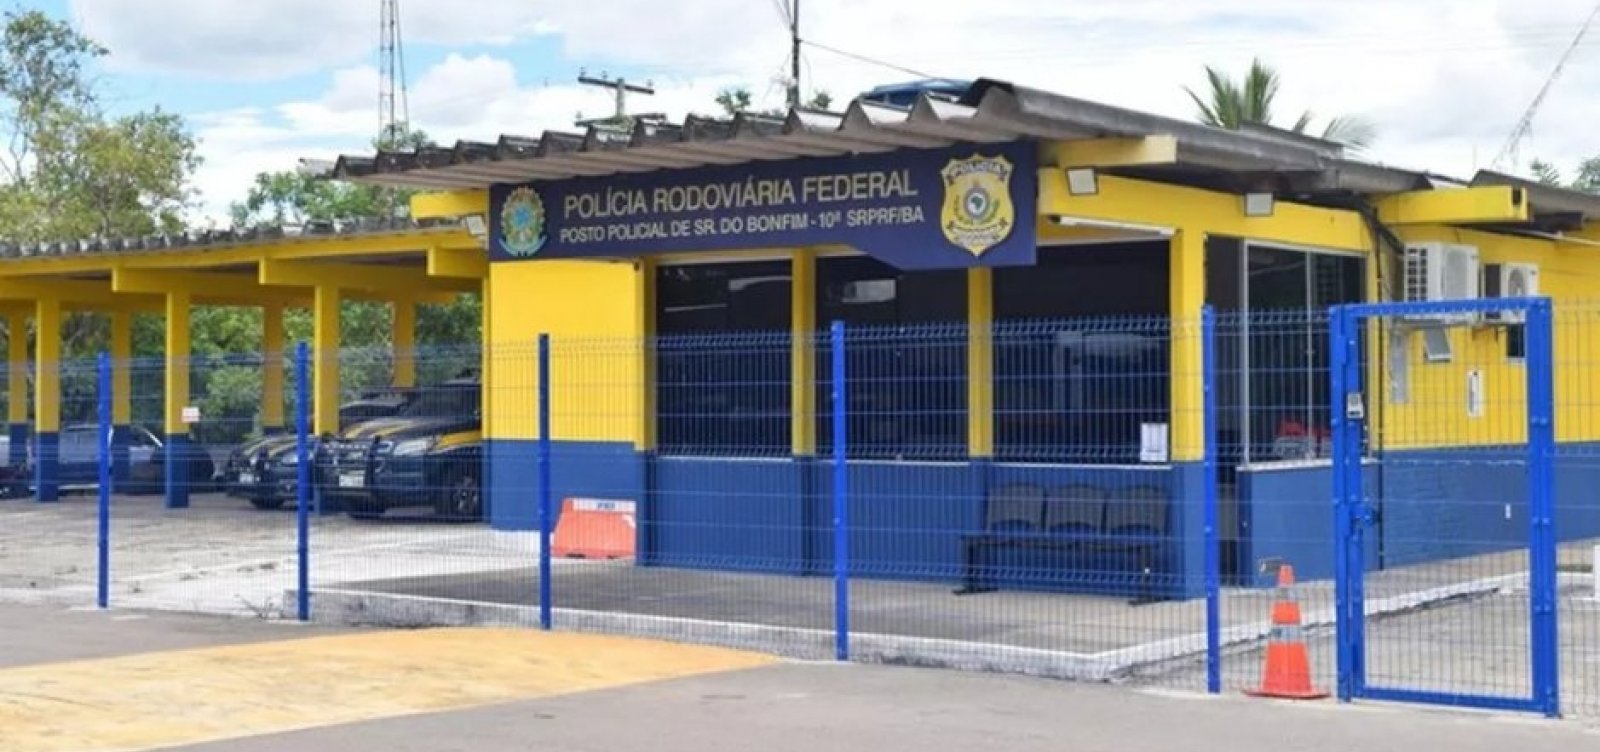 Suspeitos de aplicar golpe do ‘cartão’ em aposentados no Piauí são presos em rodovia baiana